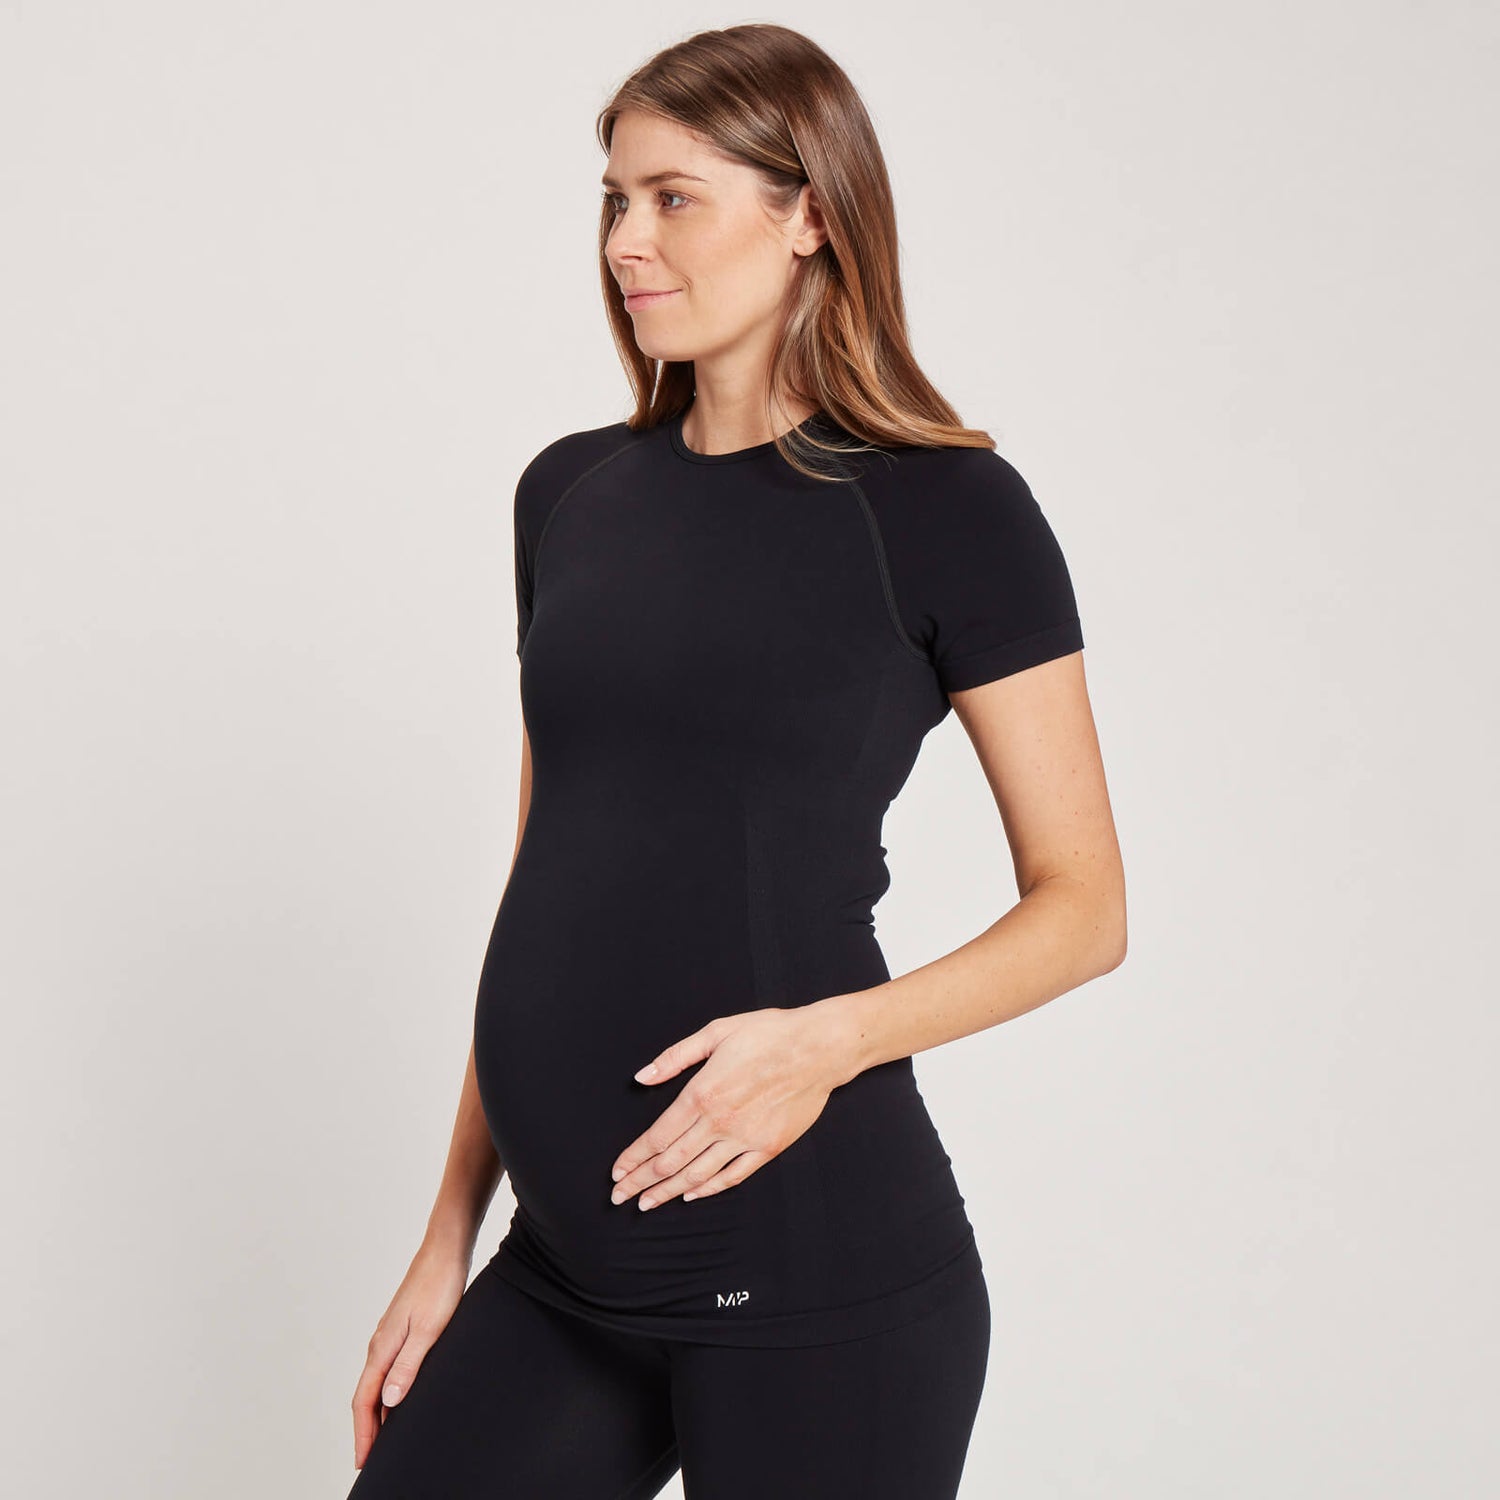 Бесшовная футболка для беременных MP с короткими рукавами, черная - XXS